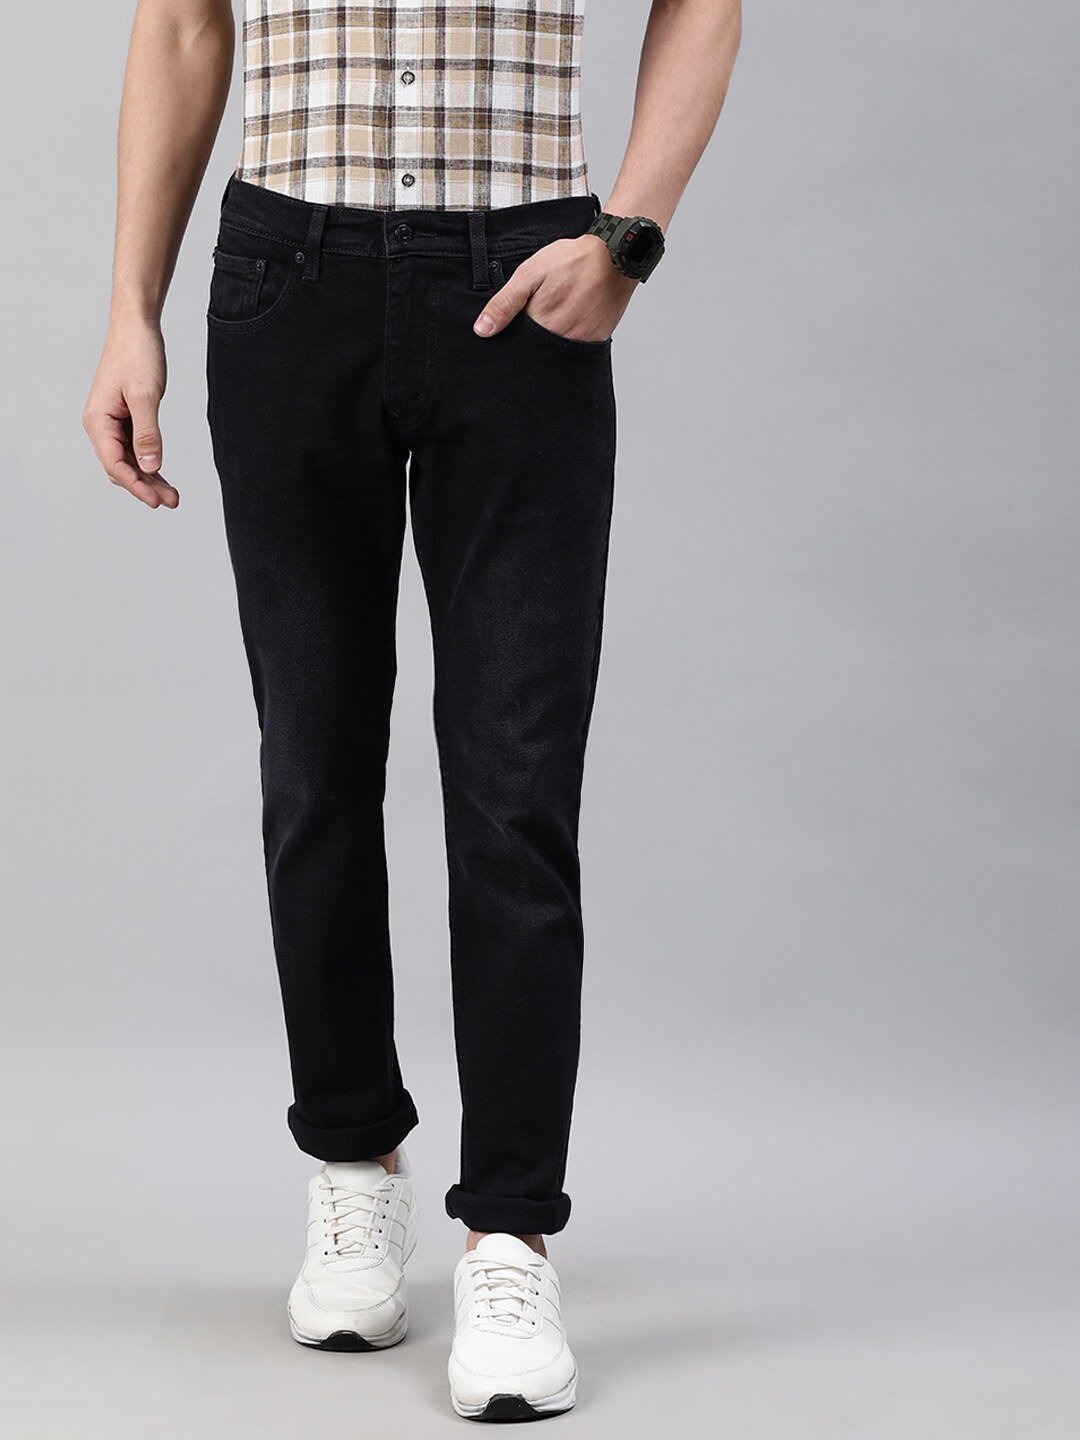 Men Black Skinny Fit Mid-Rise Clean Look Jeans-65504-0556